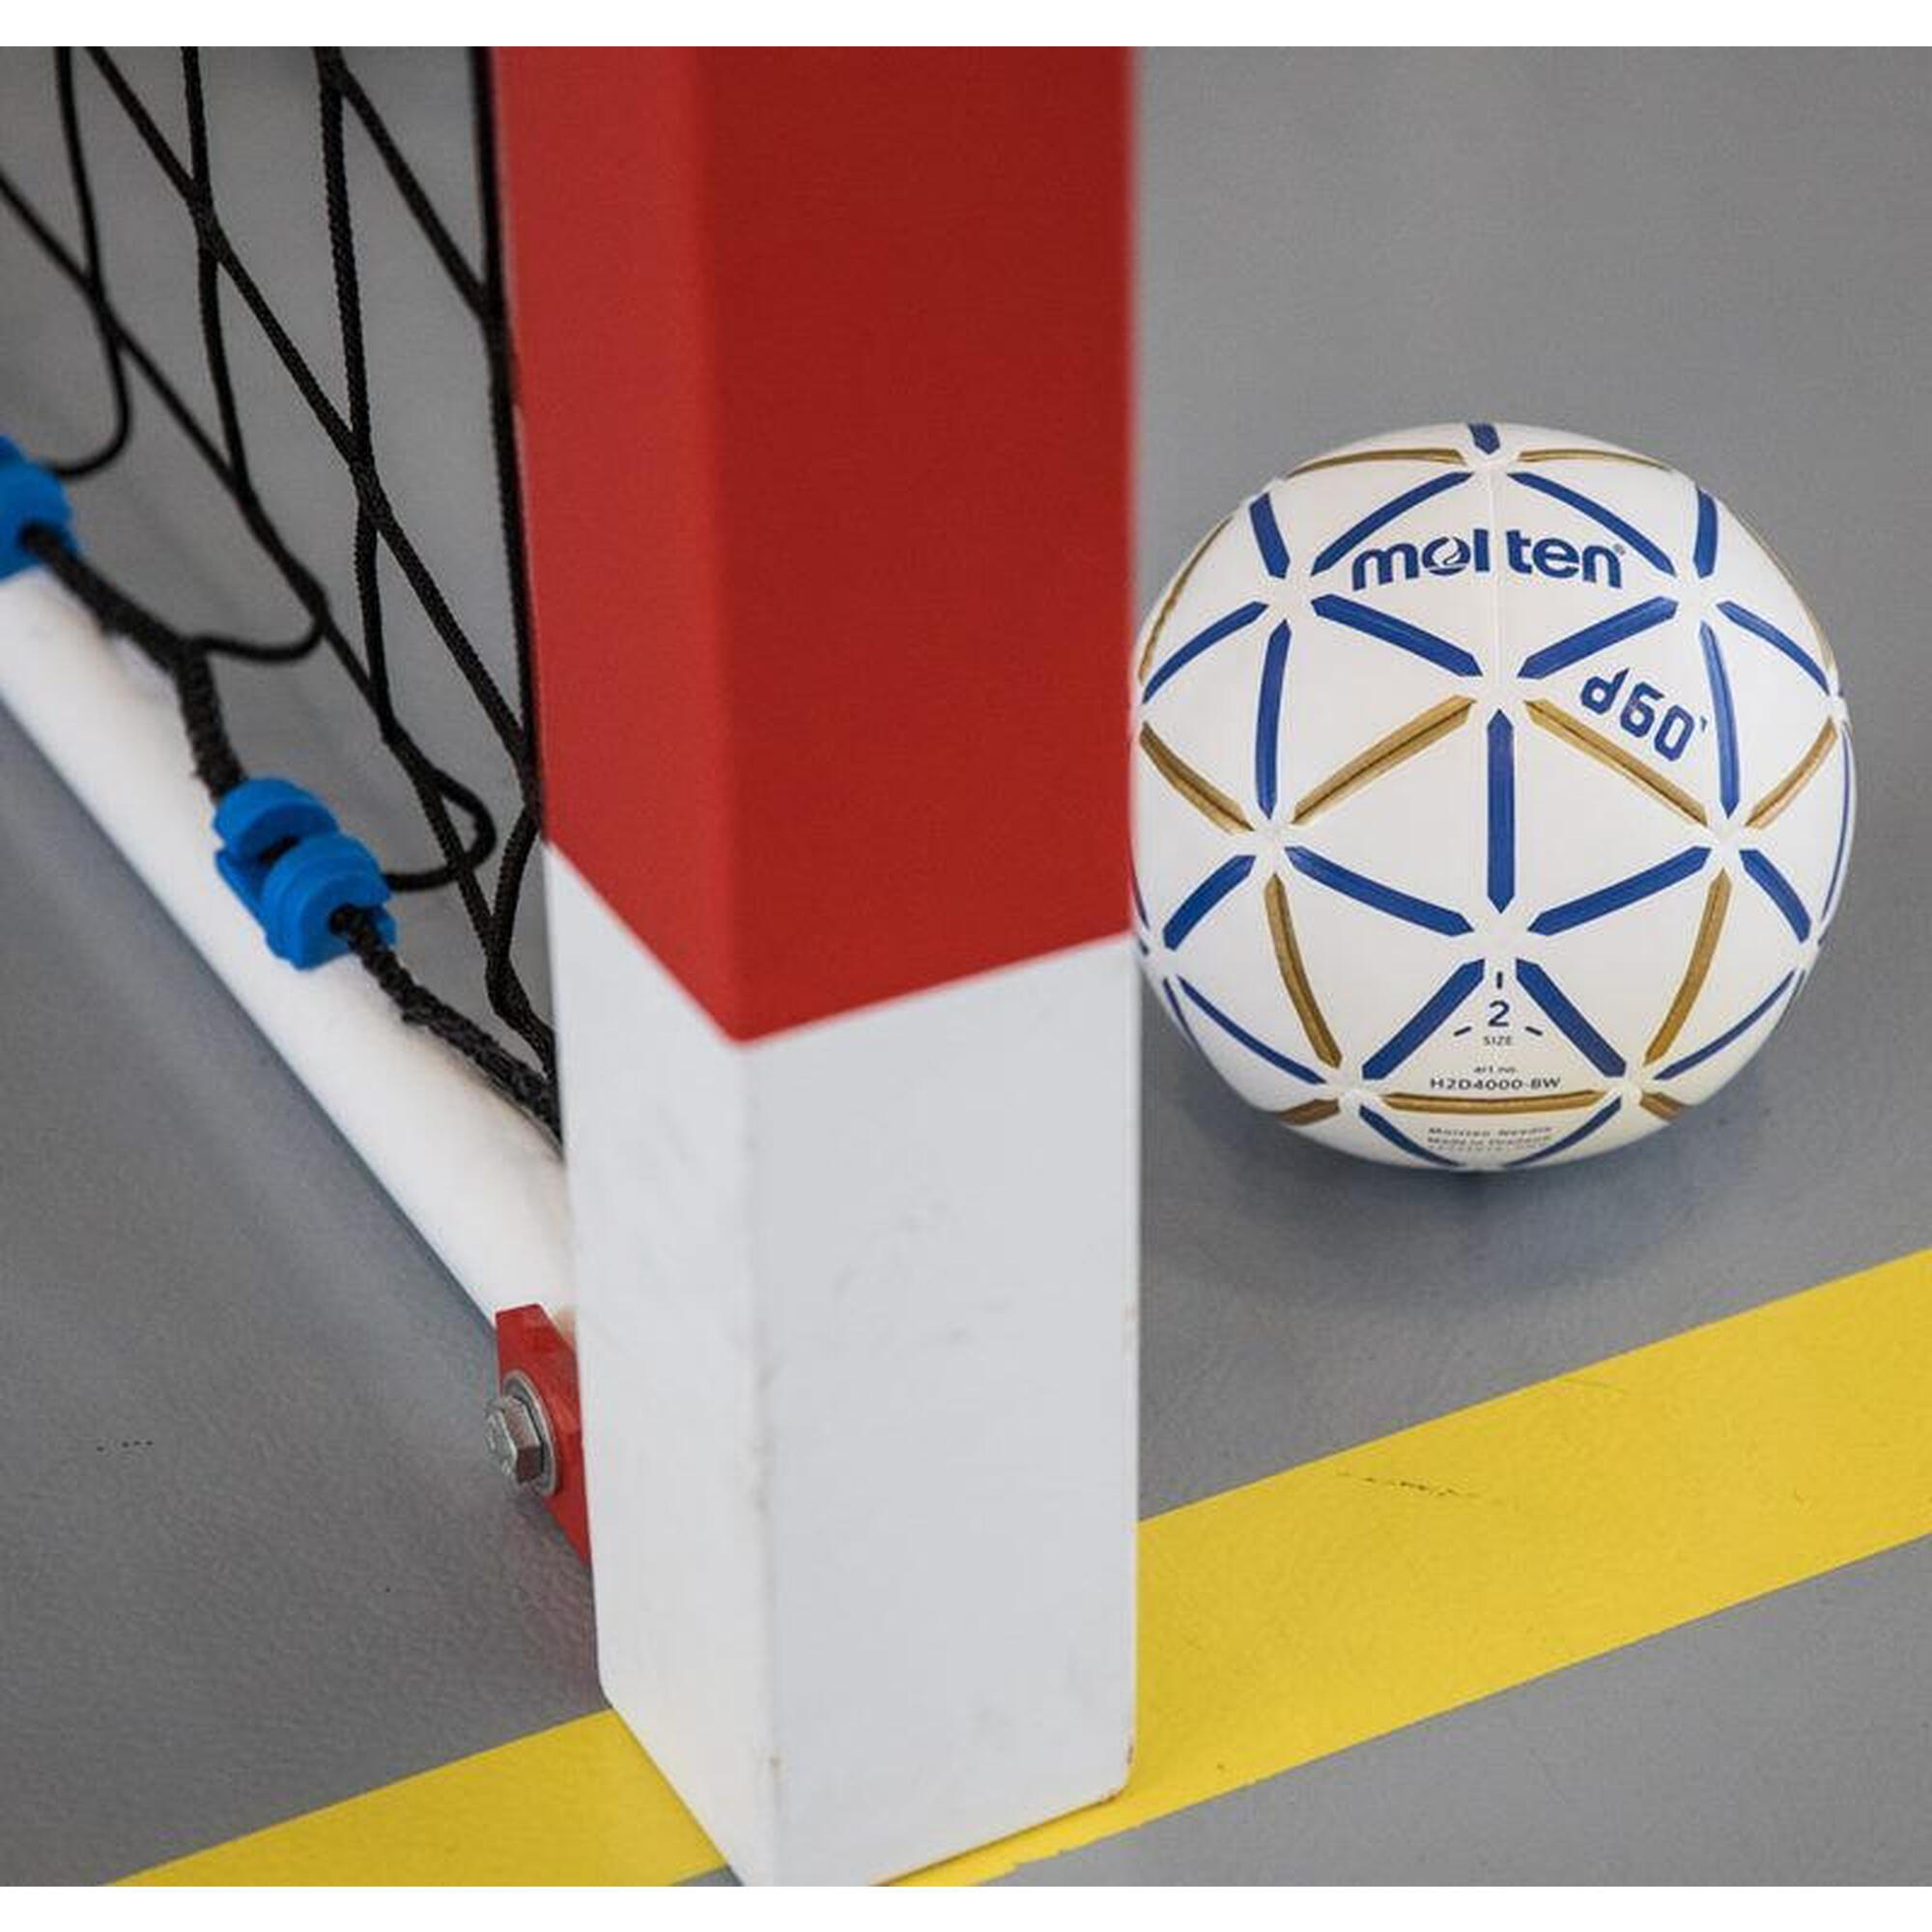 Molten Ballon de handball « d60 Resin-Free », 3